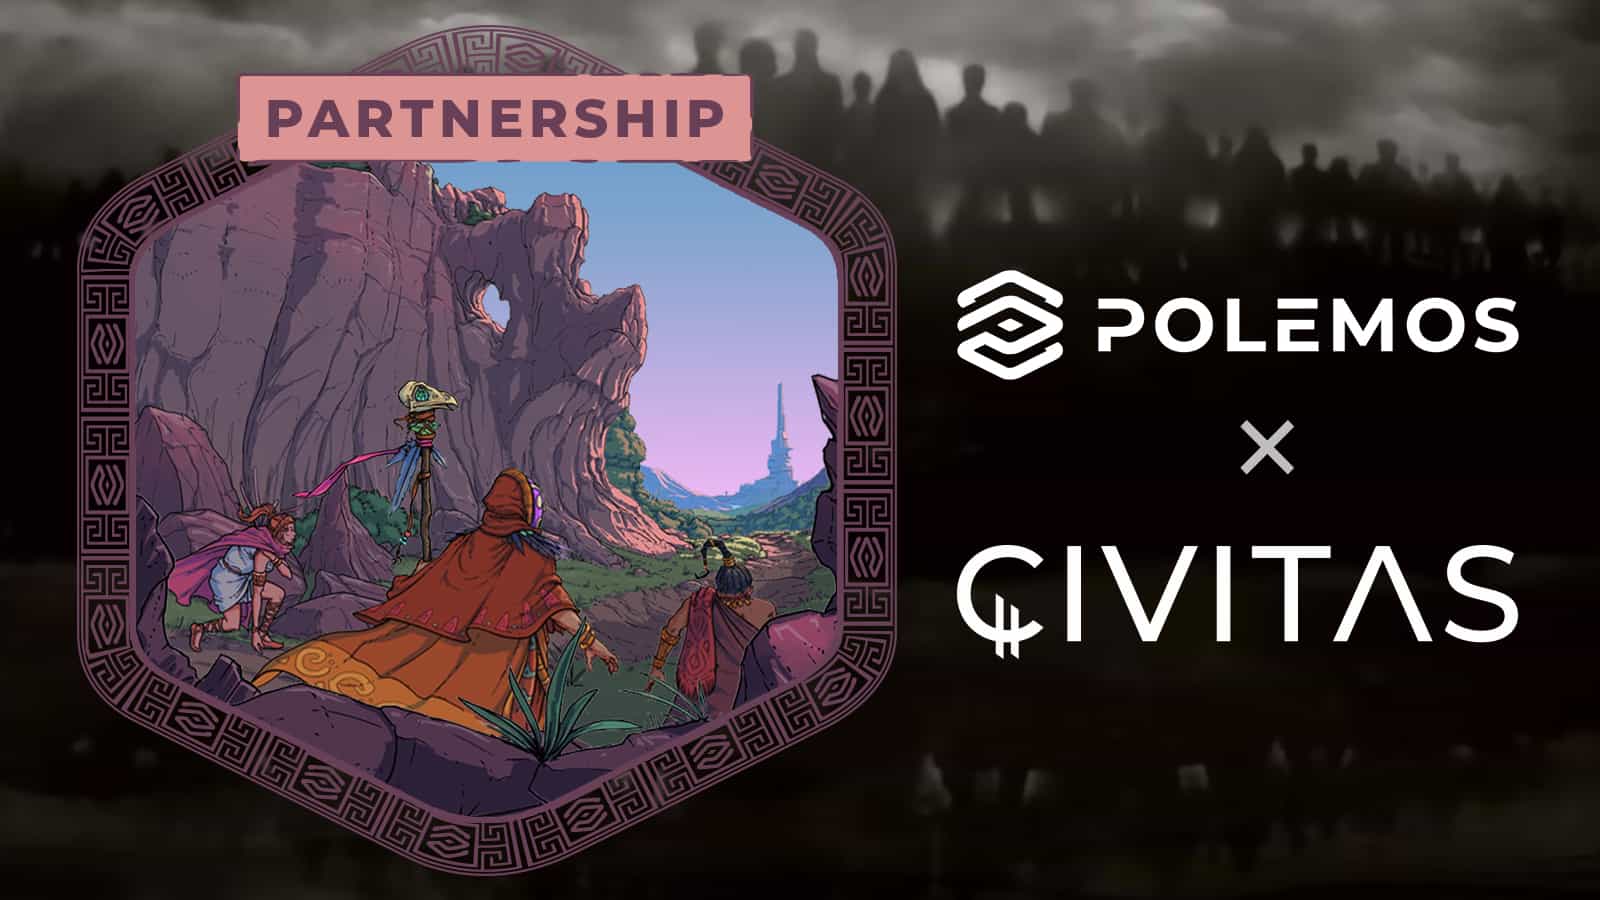 Polemos partners with Civitas